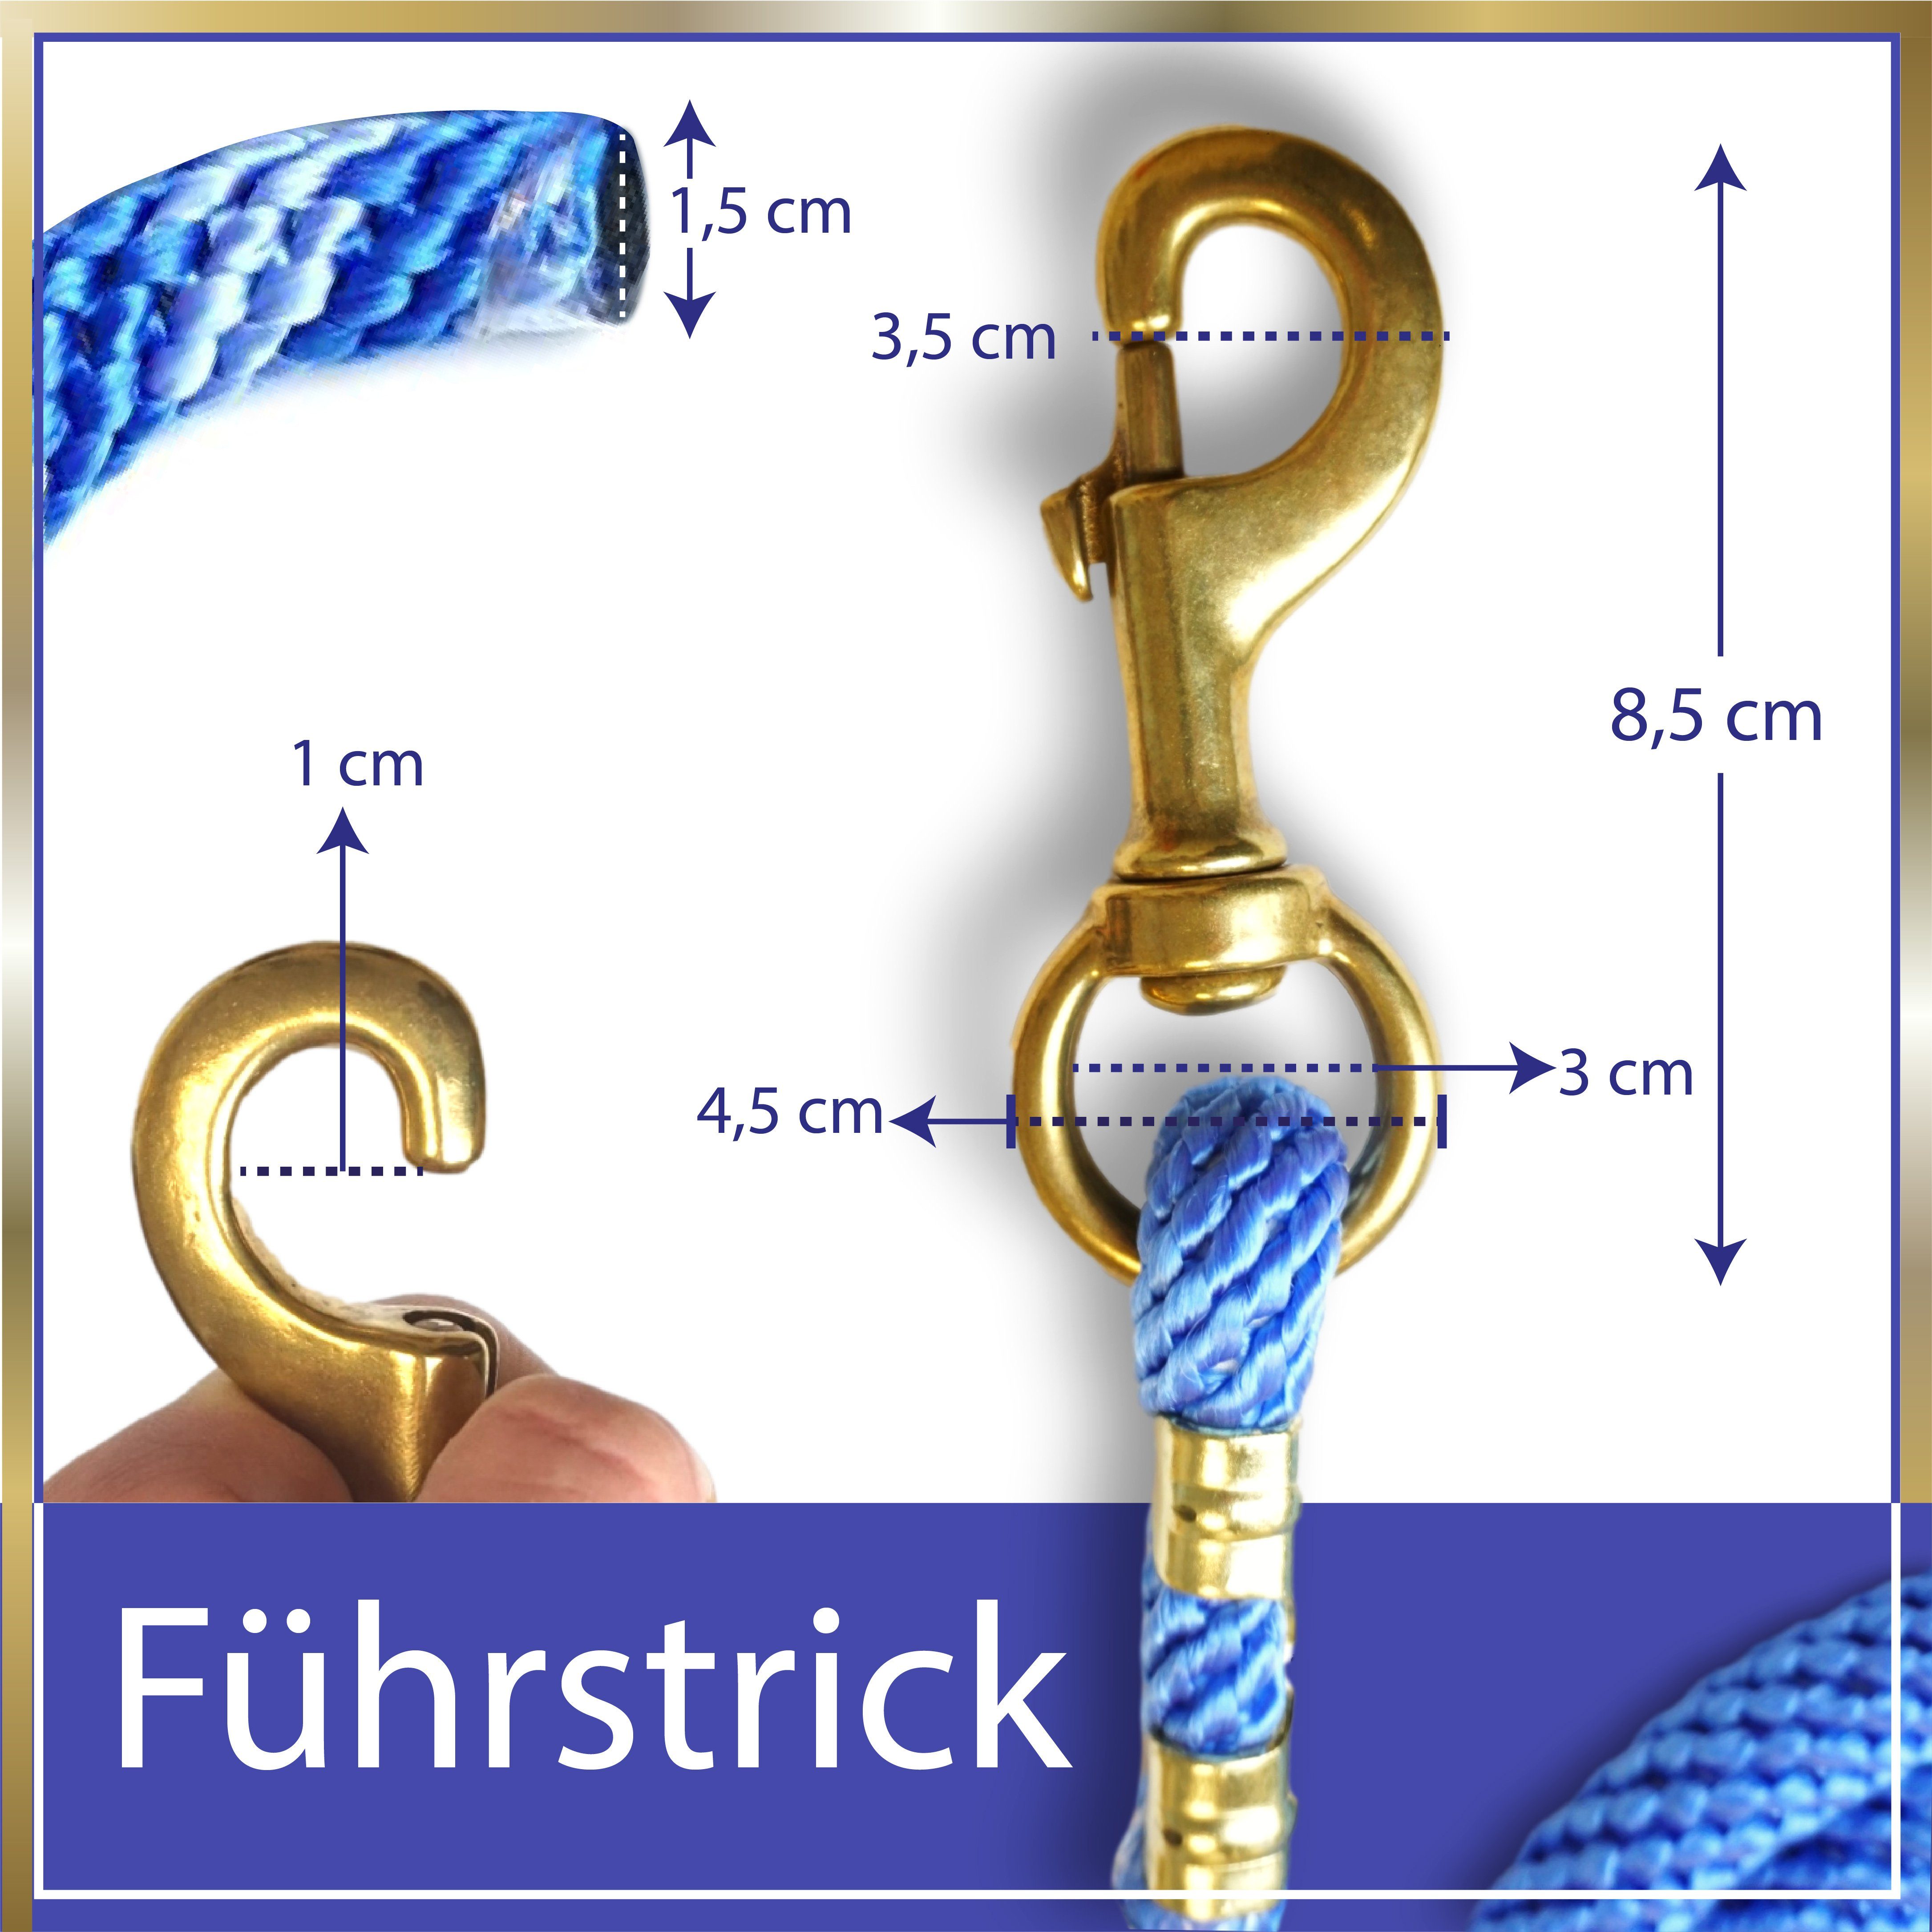 Pferdelinis Anbinde- / Führstrick Führstrick Karabiner Anbindestrick, 2,5m, blau-hellblau mit Pferde, Länge Führstrick für 2,5m